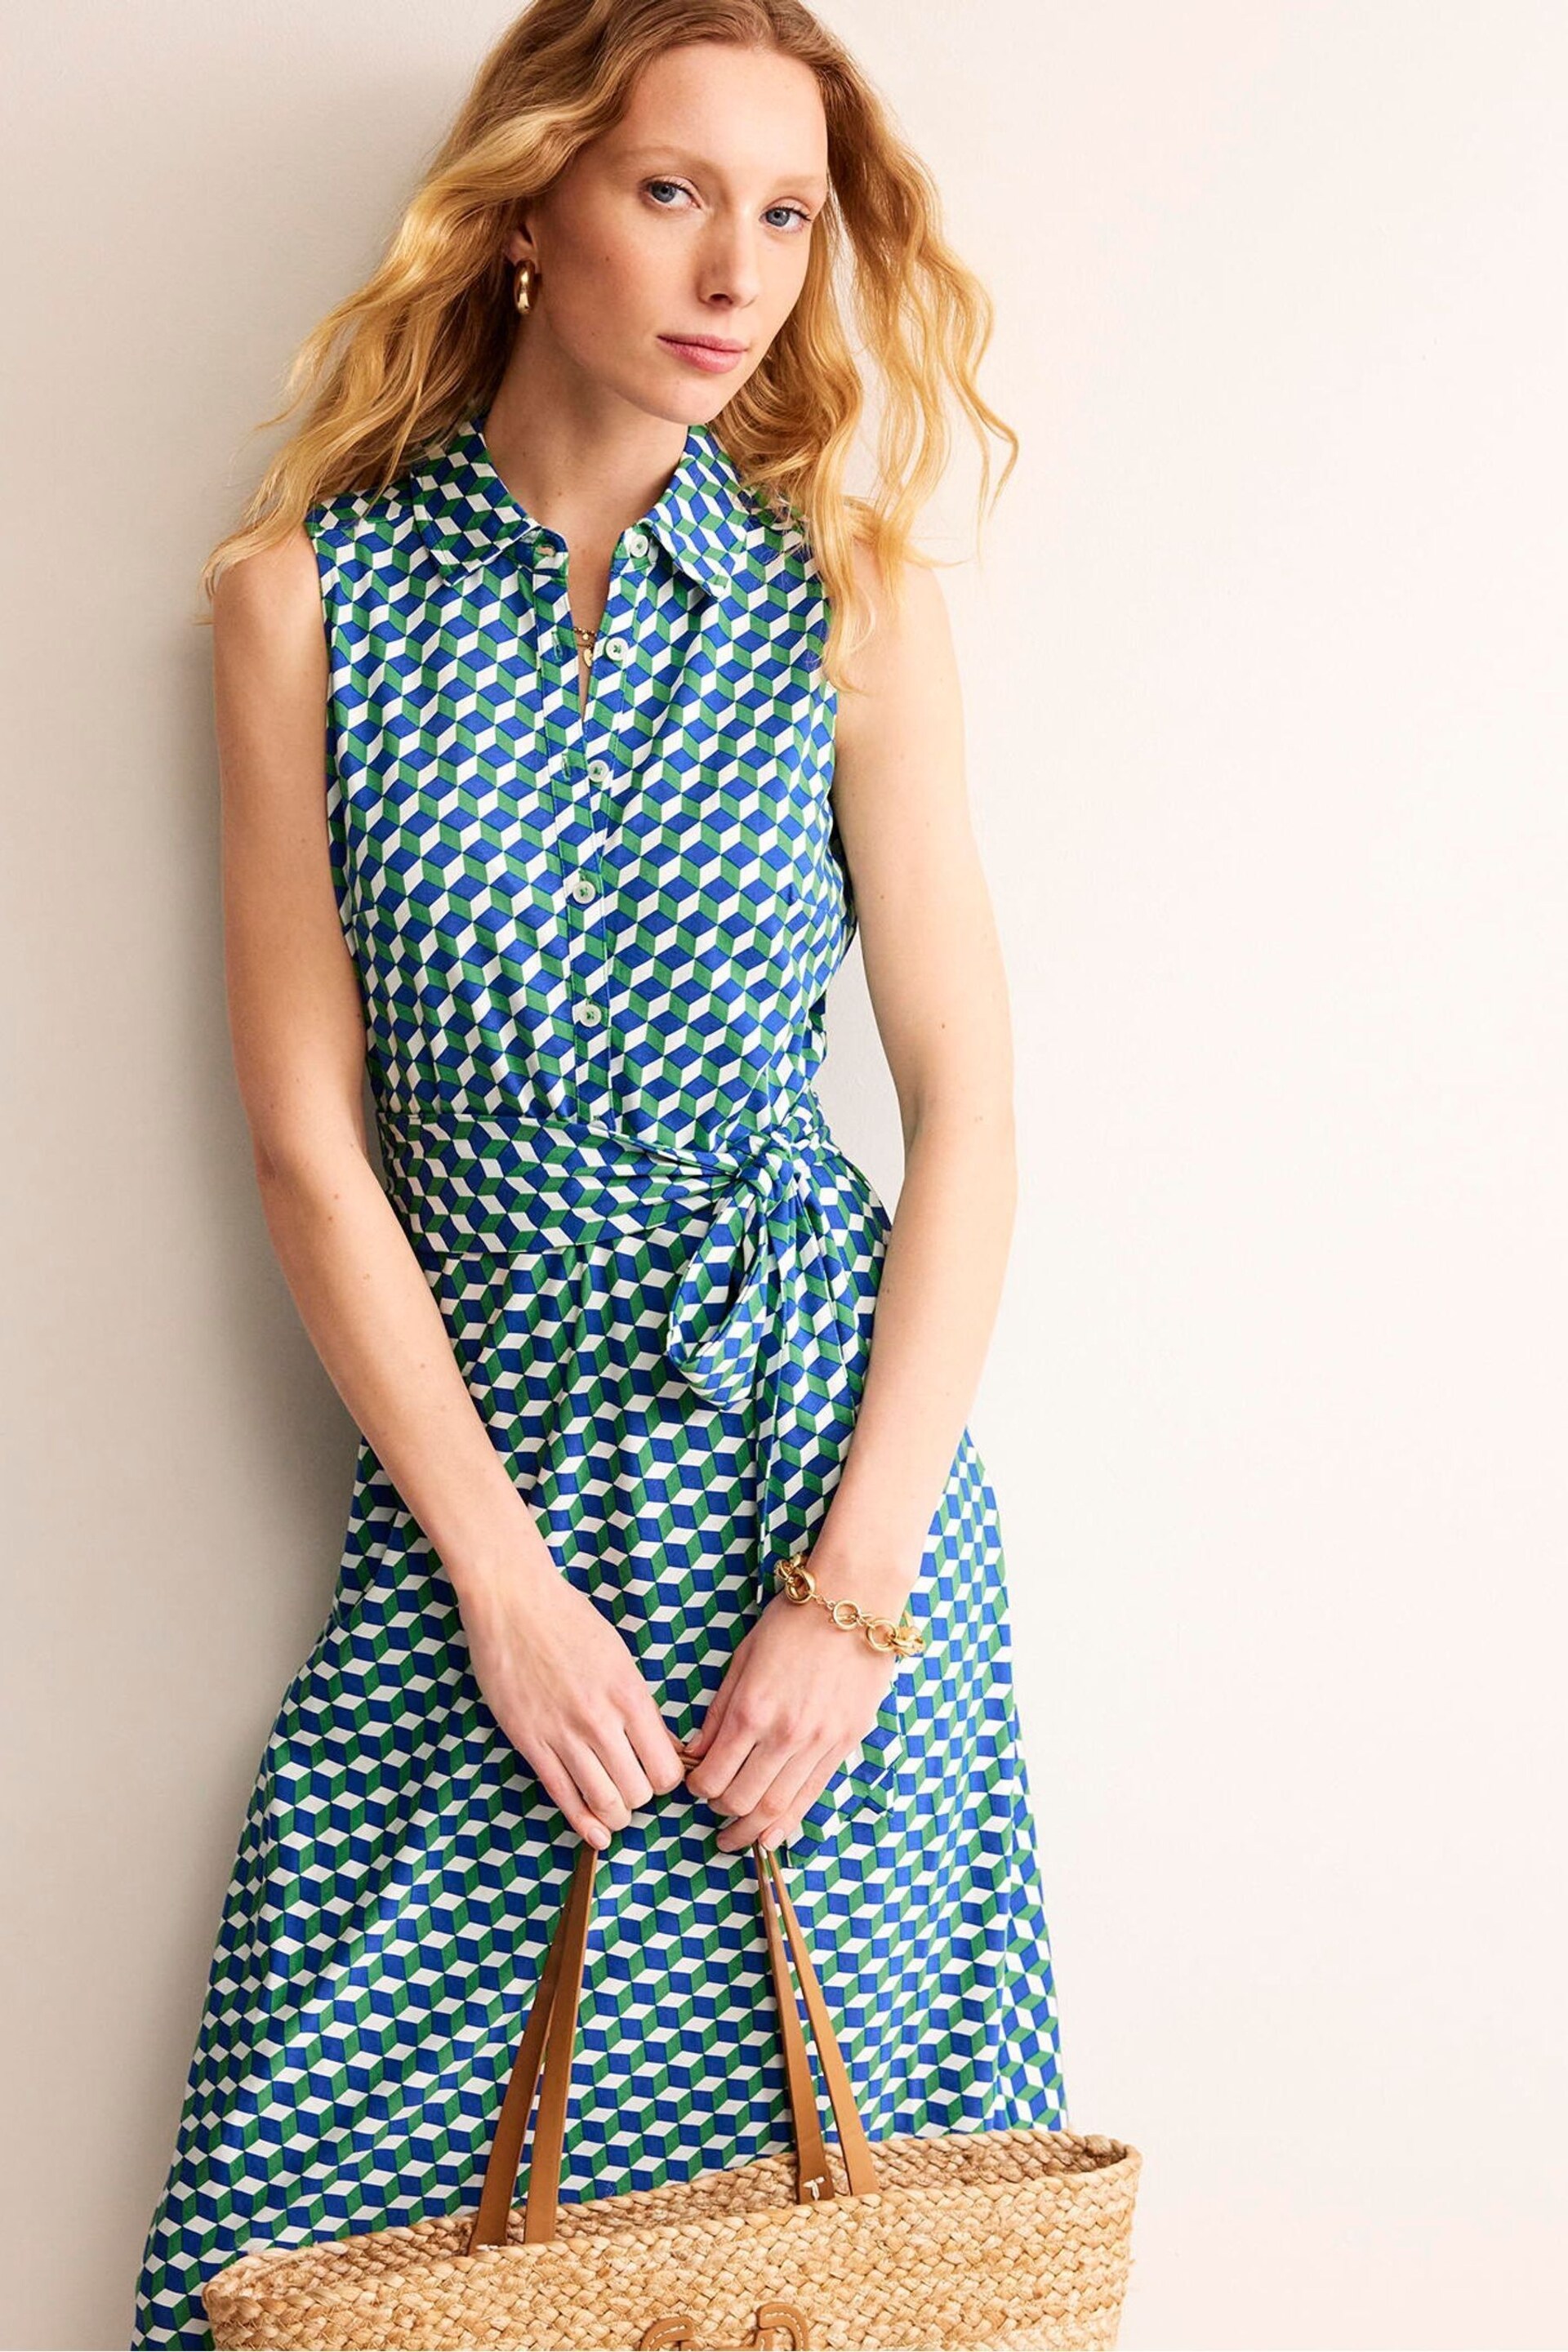 Boden Green Laura Sleeveless Shirt Dress - Image 4 of 5